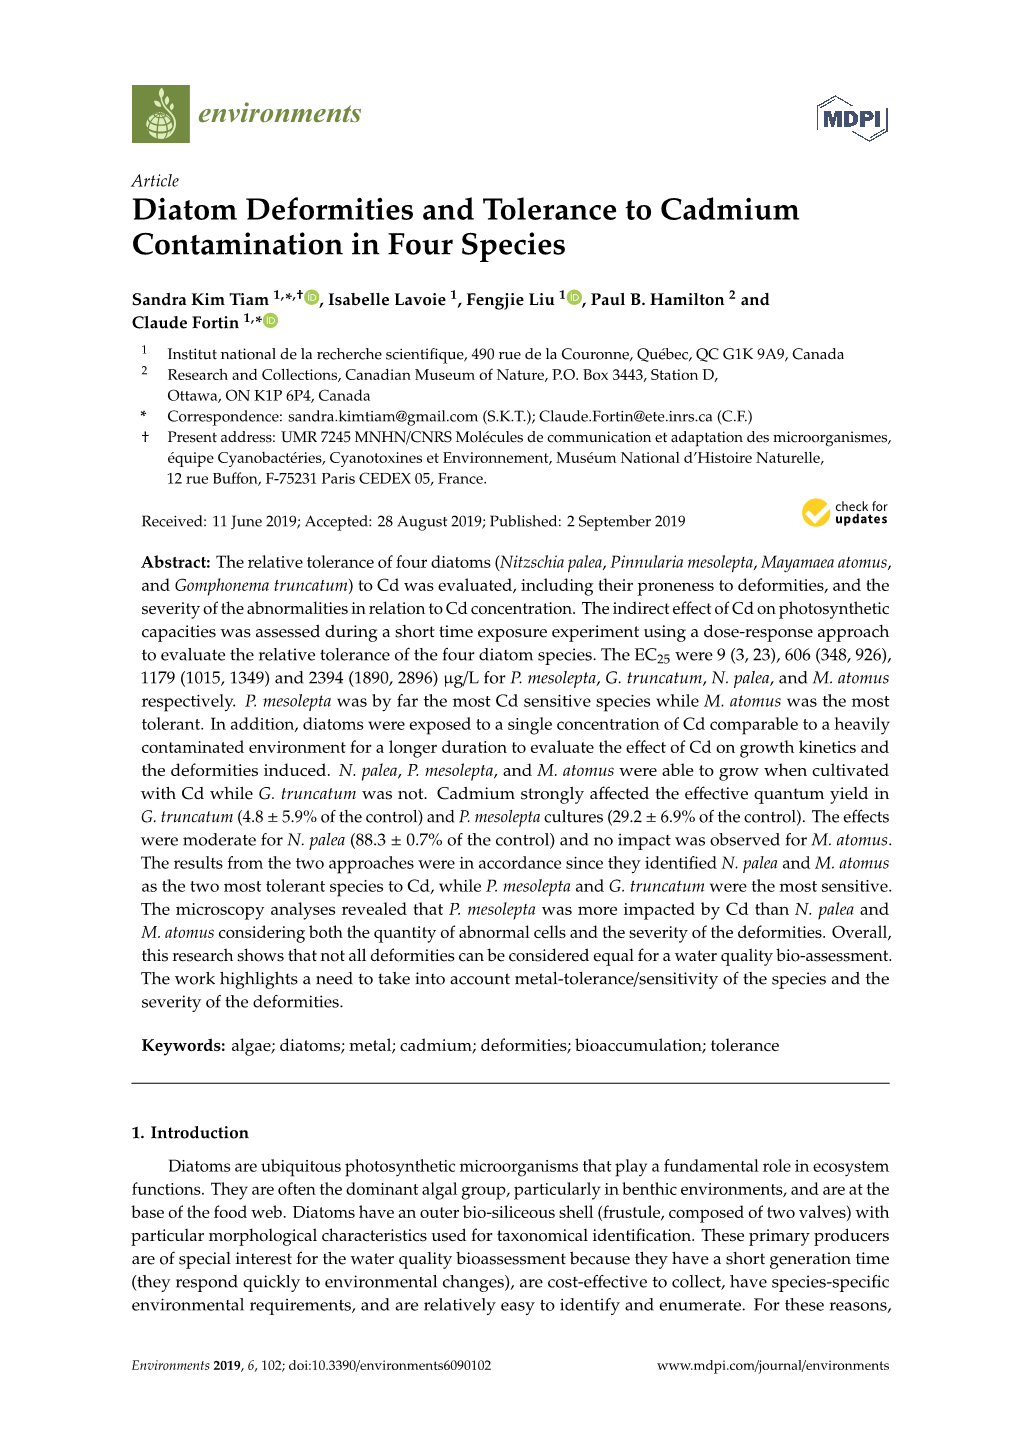 Diatom Deformities and Tolerance to Cadmium Contamination in Four Species